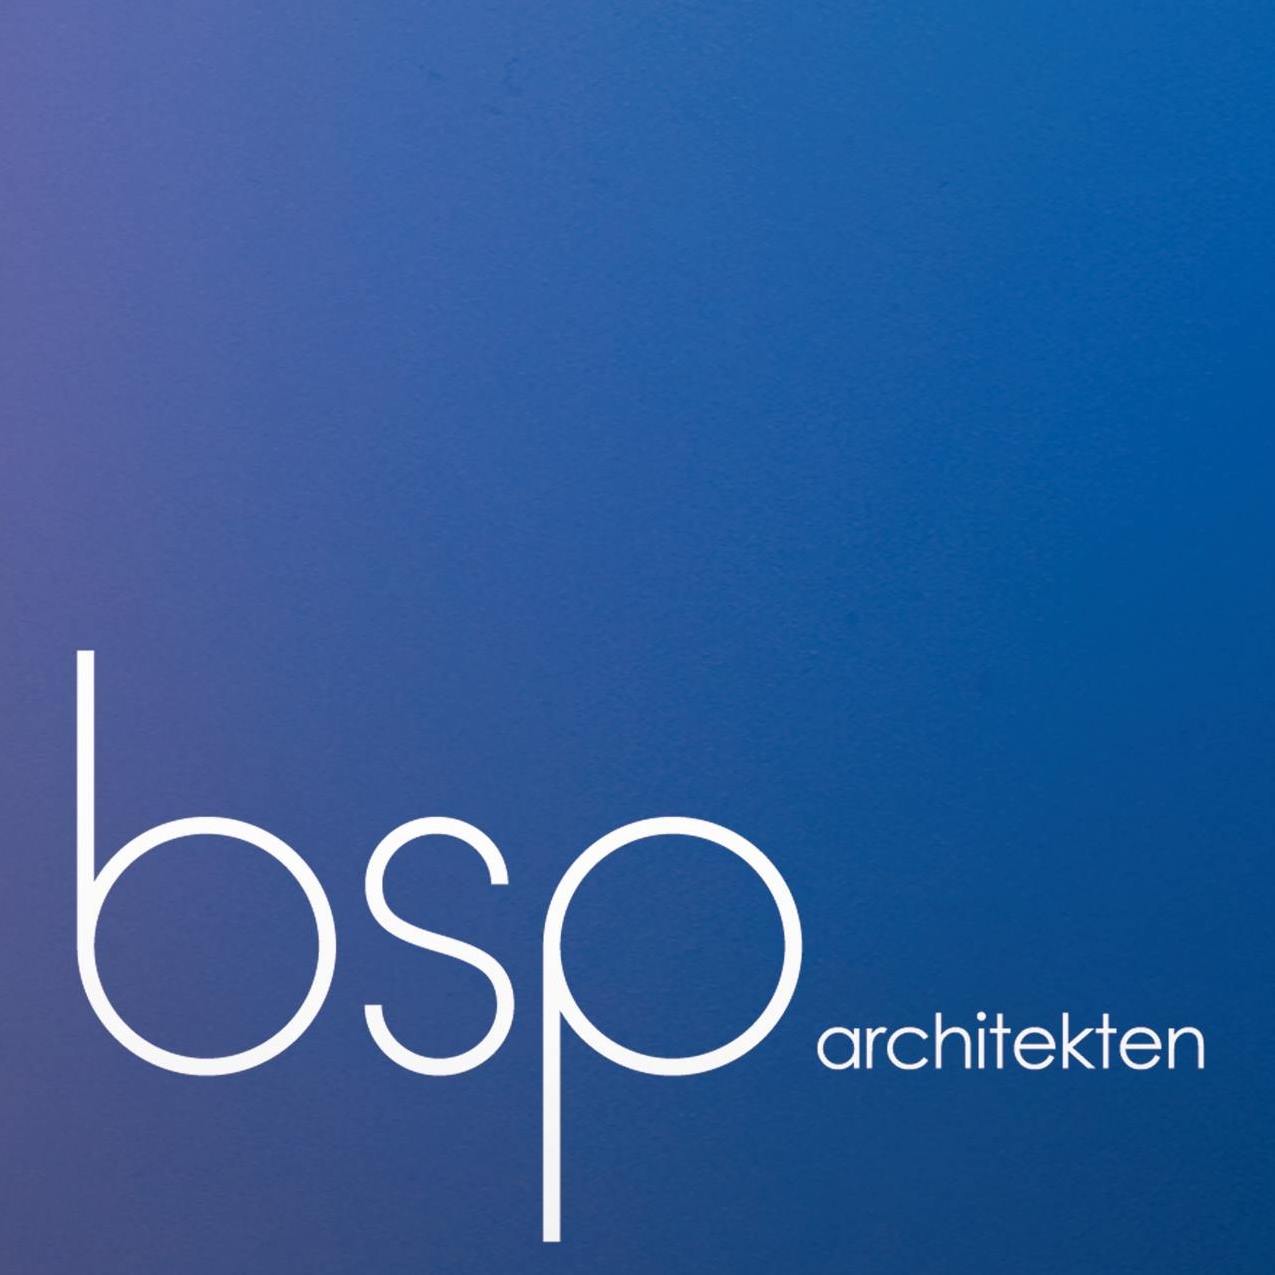 bsp architekten - Partner von Stukkateur Jungkunst aus Bochum